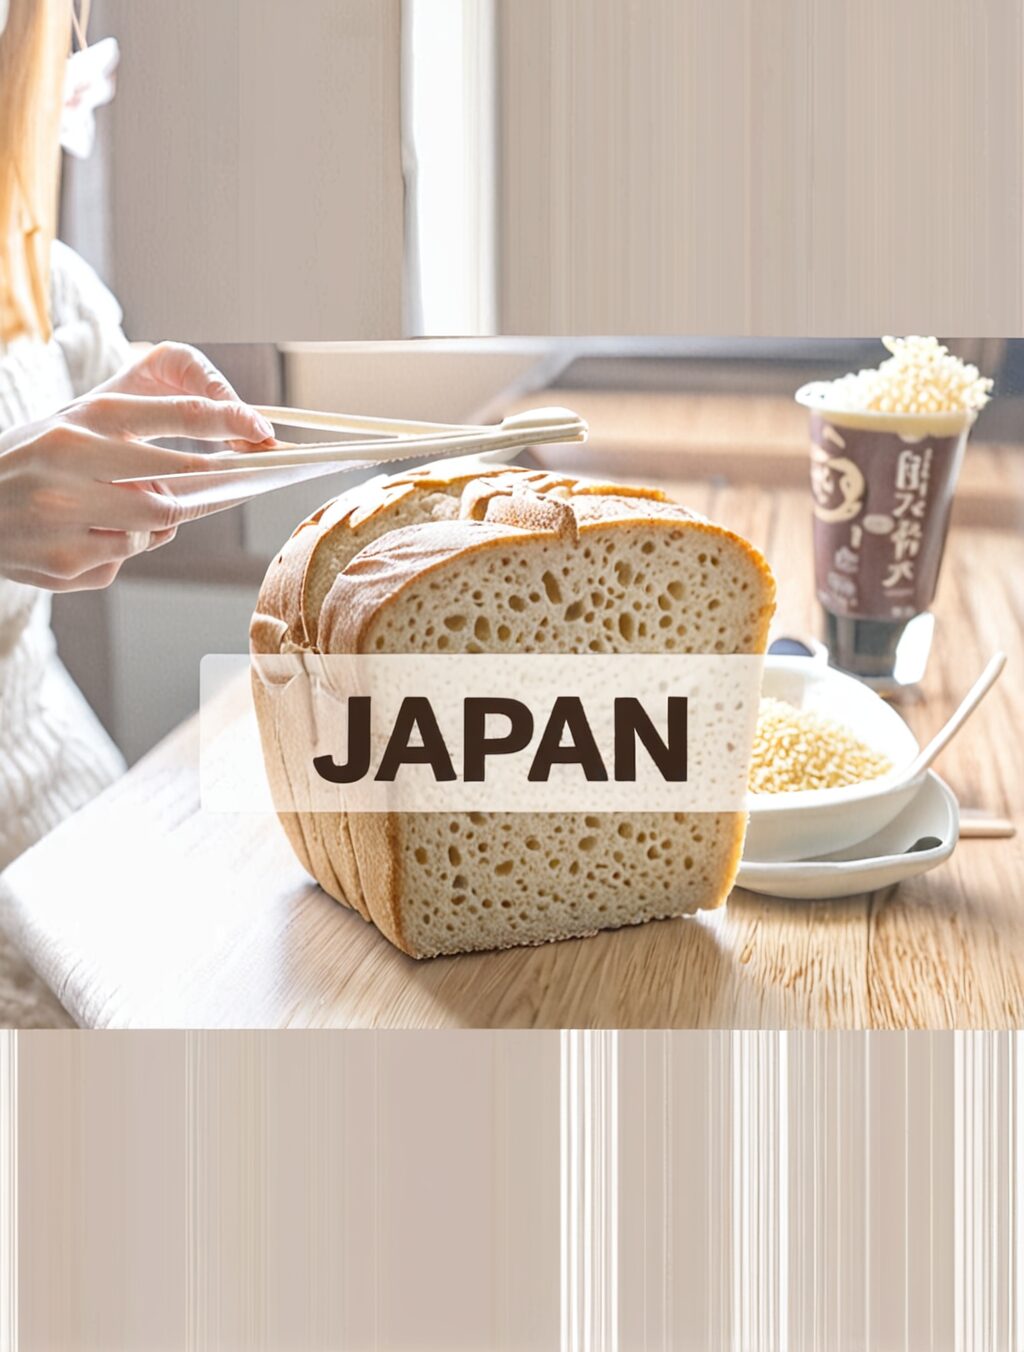 eating gluten free in japan reddit